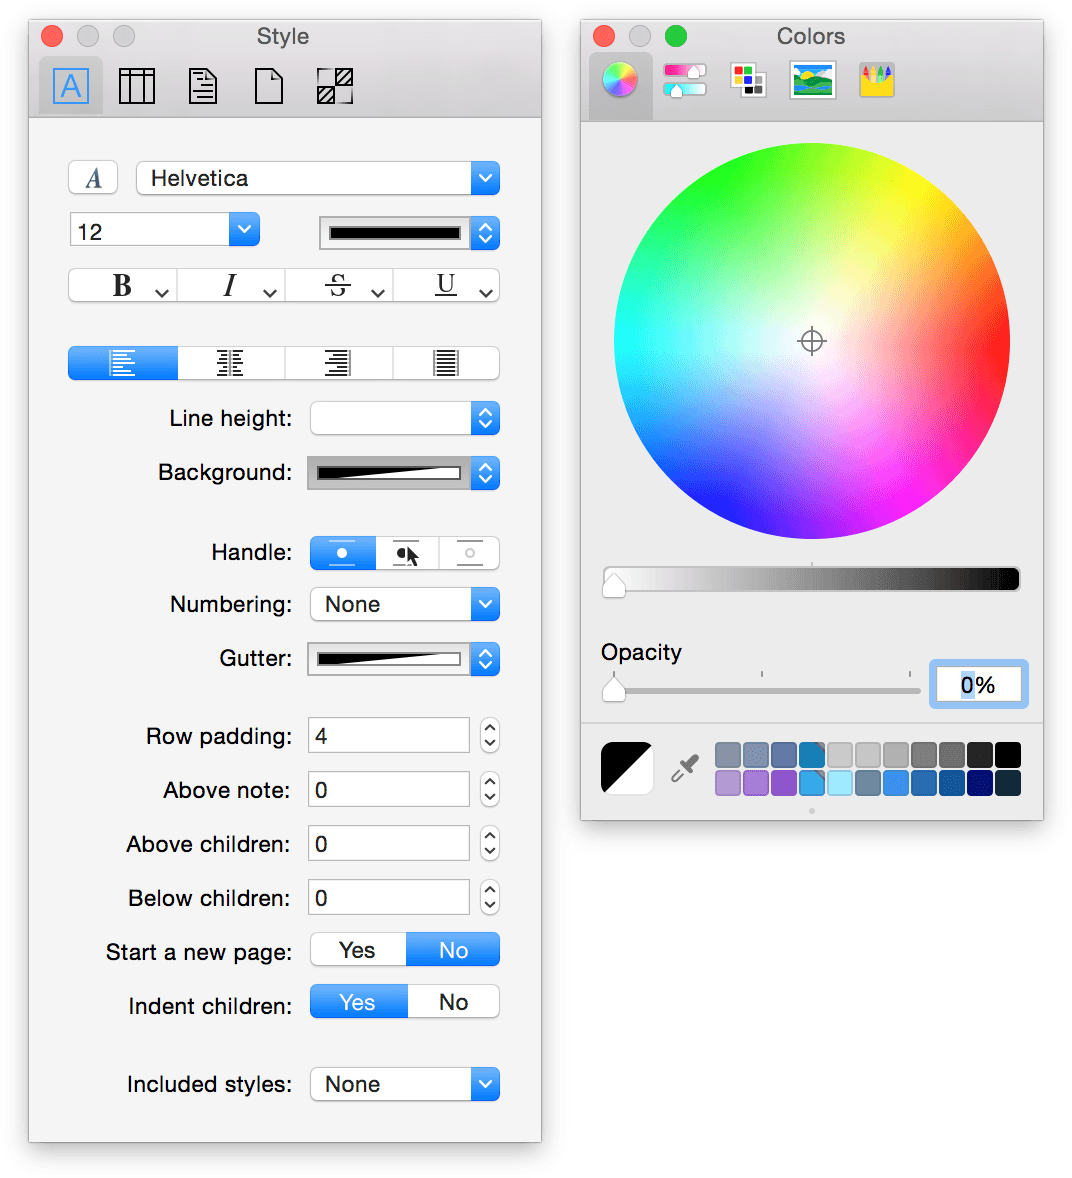 Open the Colors palette